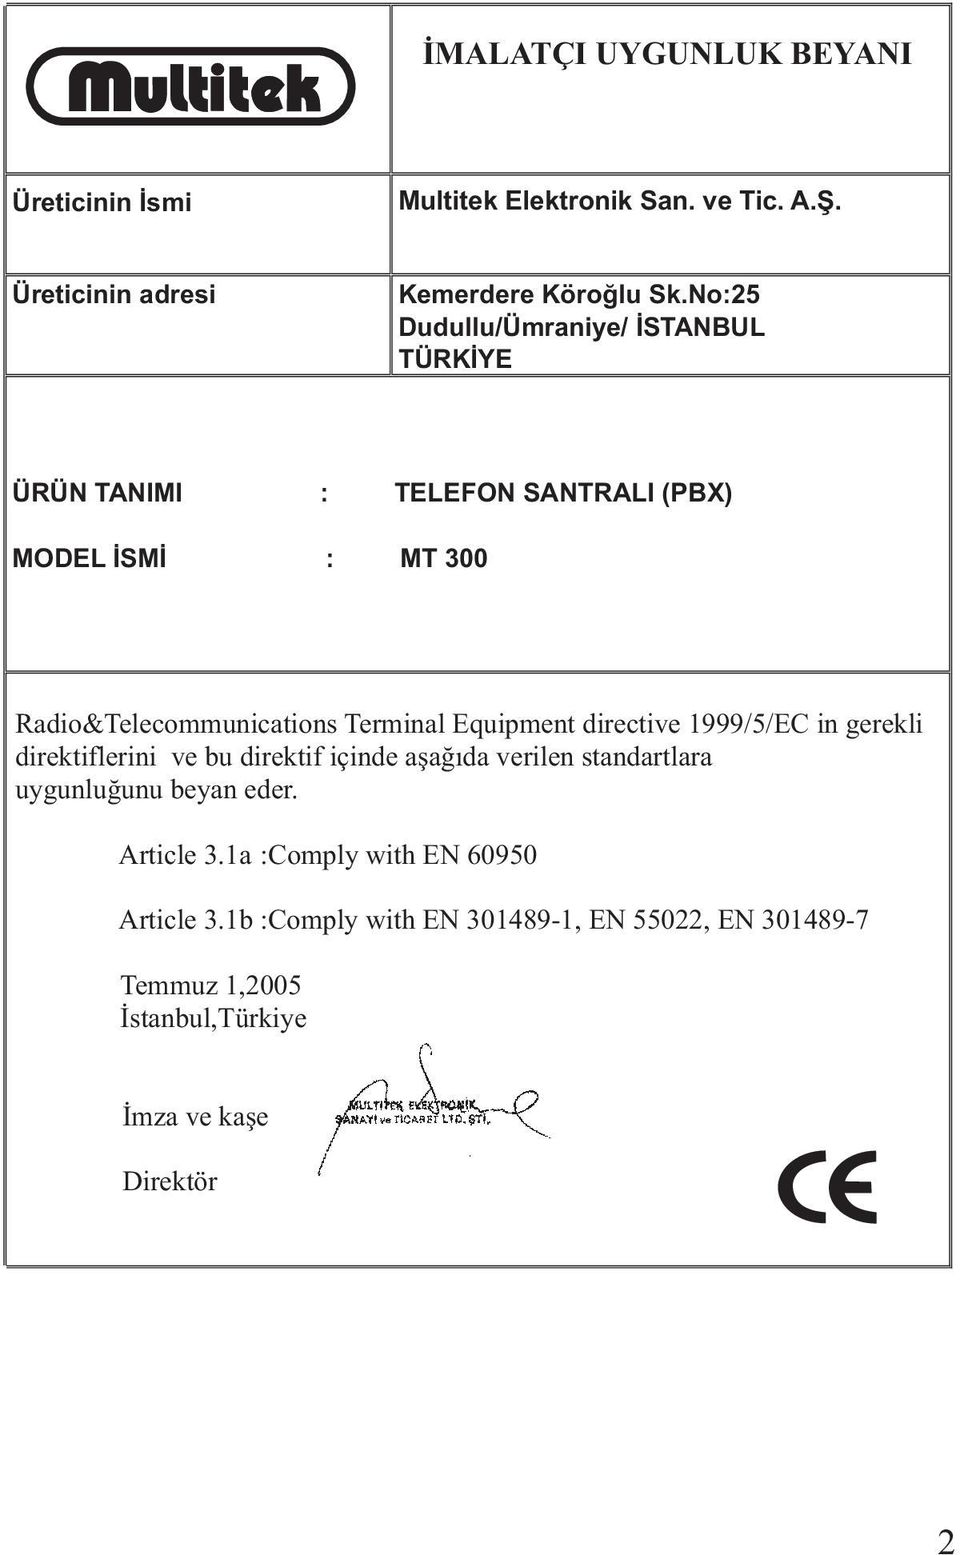 Equipment directive 1999/5/EC in gerekli direktiflerini ve bu direktif içinde aþaðýda verilen standartlara uygunluðunu beyan eder.